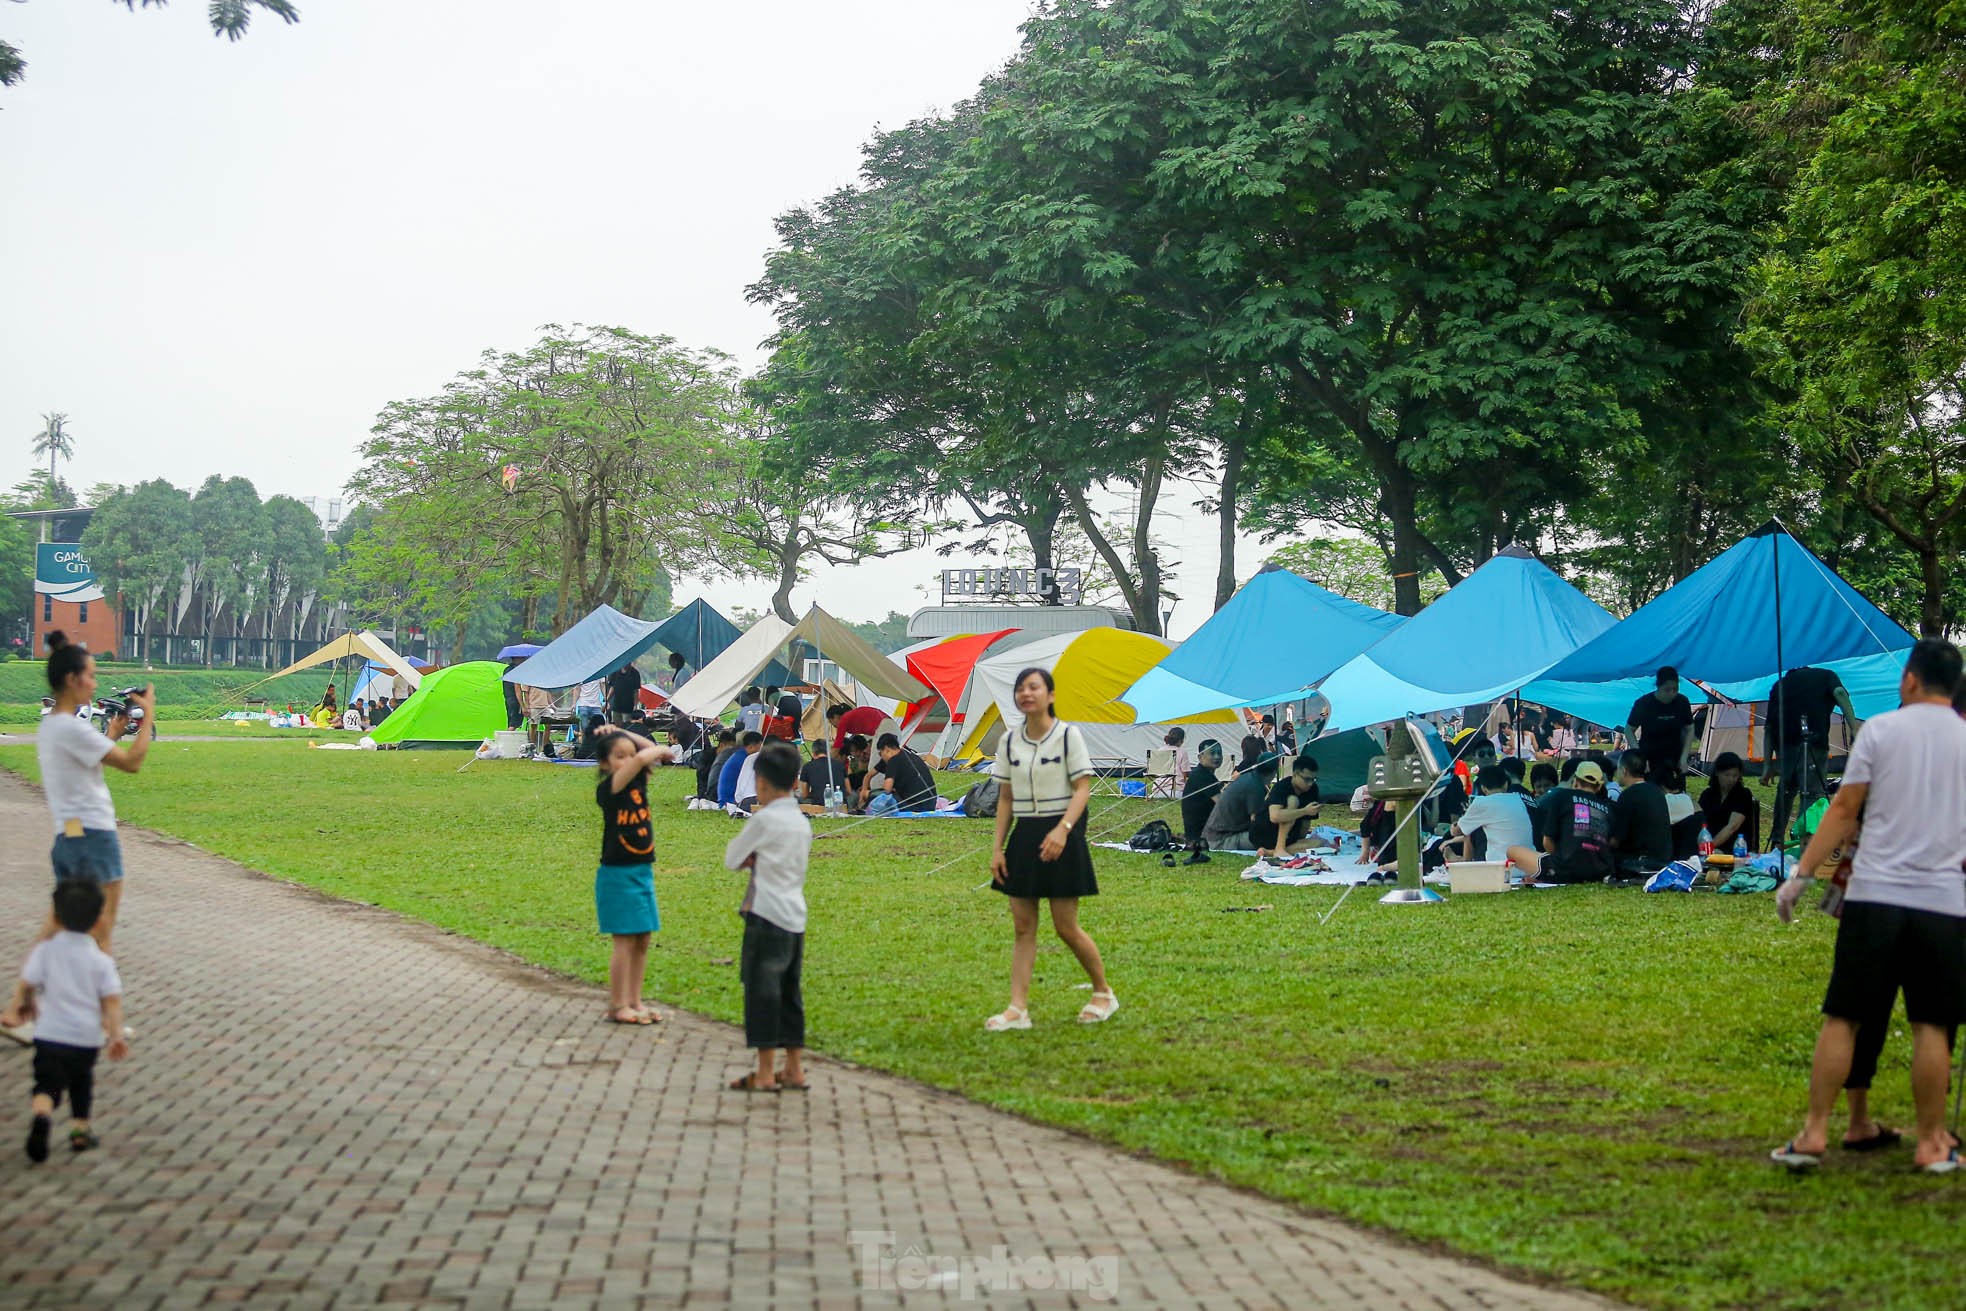 Hàng nghìn người đổ về công viên Yên Sở cắm trại trong ngày nghỉ lễ - Ảnh 3.